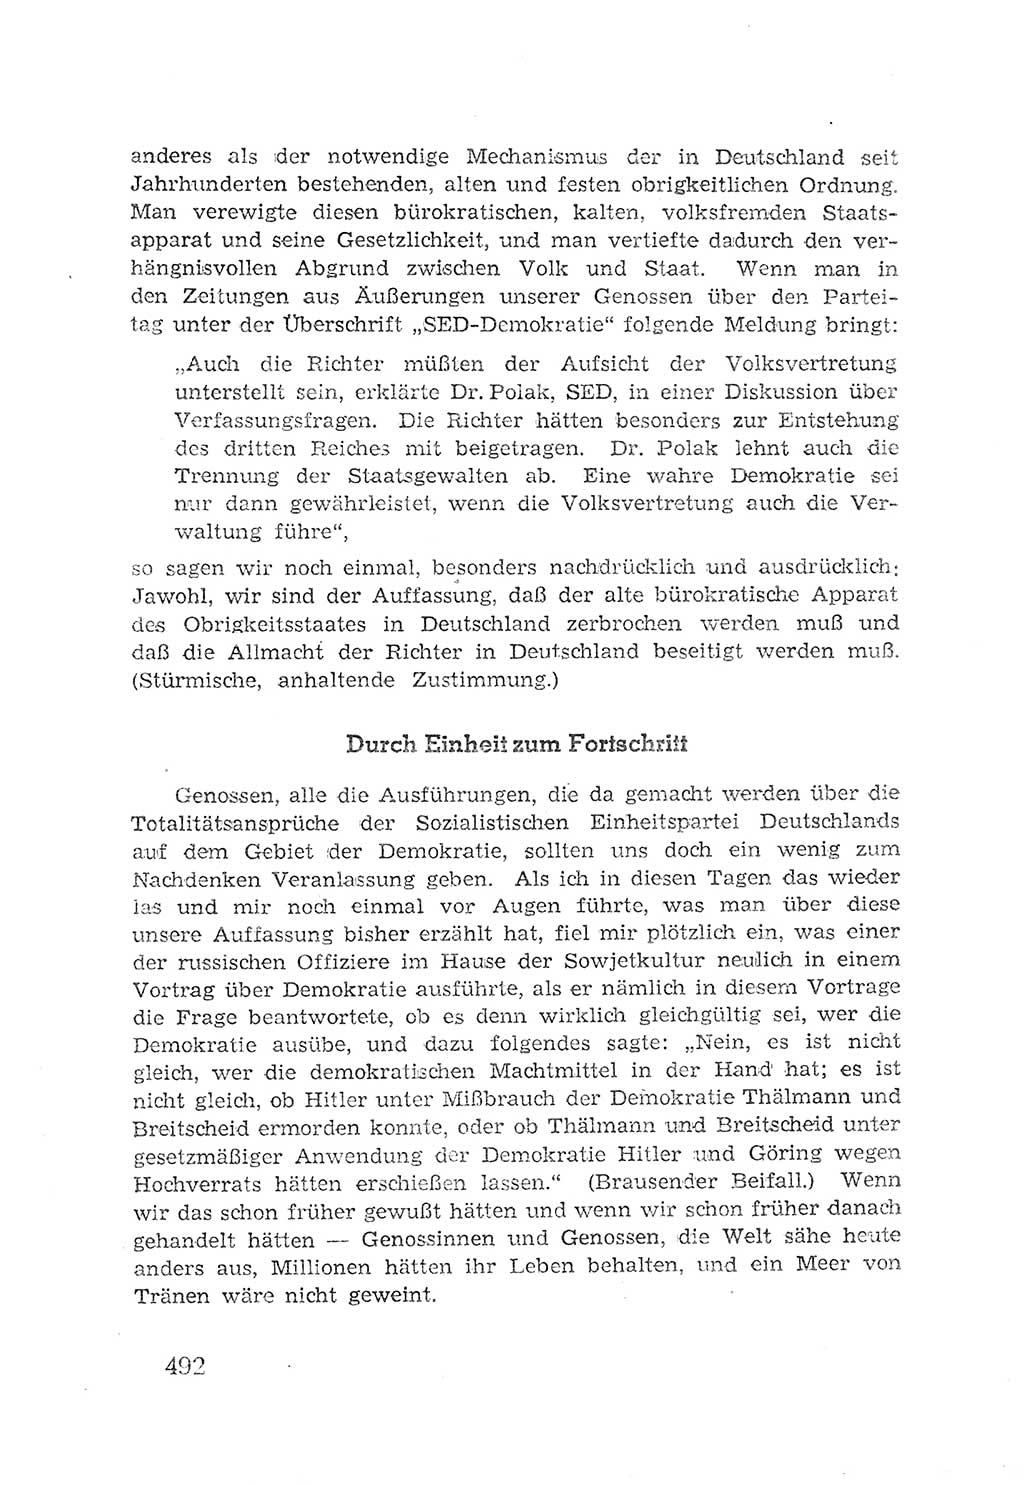 Protokoll der Verhandlungen des 2. Parteitages der Sozialistischen Einheitspartei Deutschlands (SED) [Sowjetische Besatzungszone (SBZ) Deutschlands] 1947, Seite 492 (Prot. Verh. 2. PT SED SBZ Dtl. 1947, S. 492)